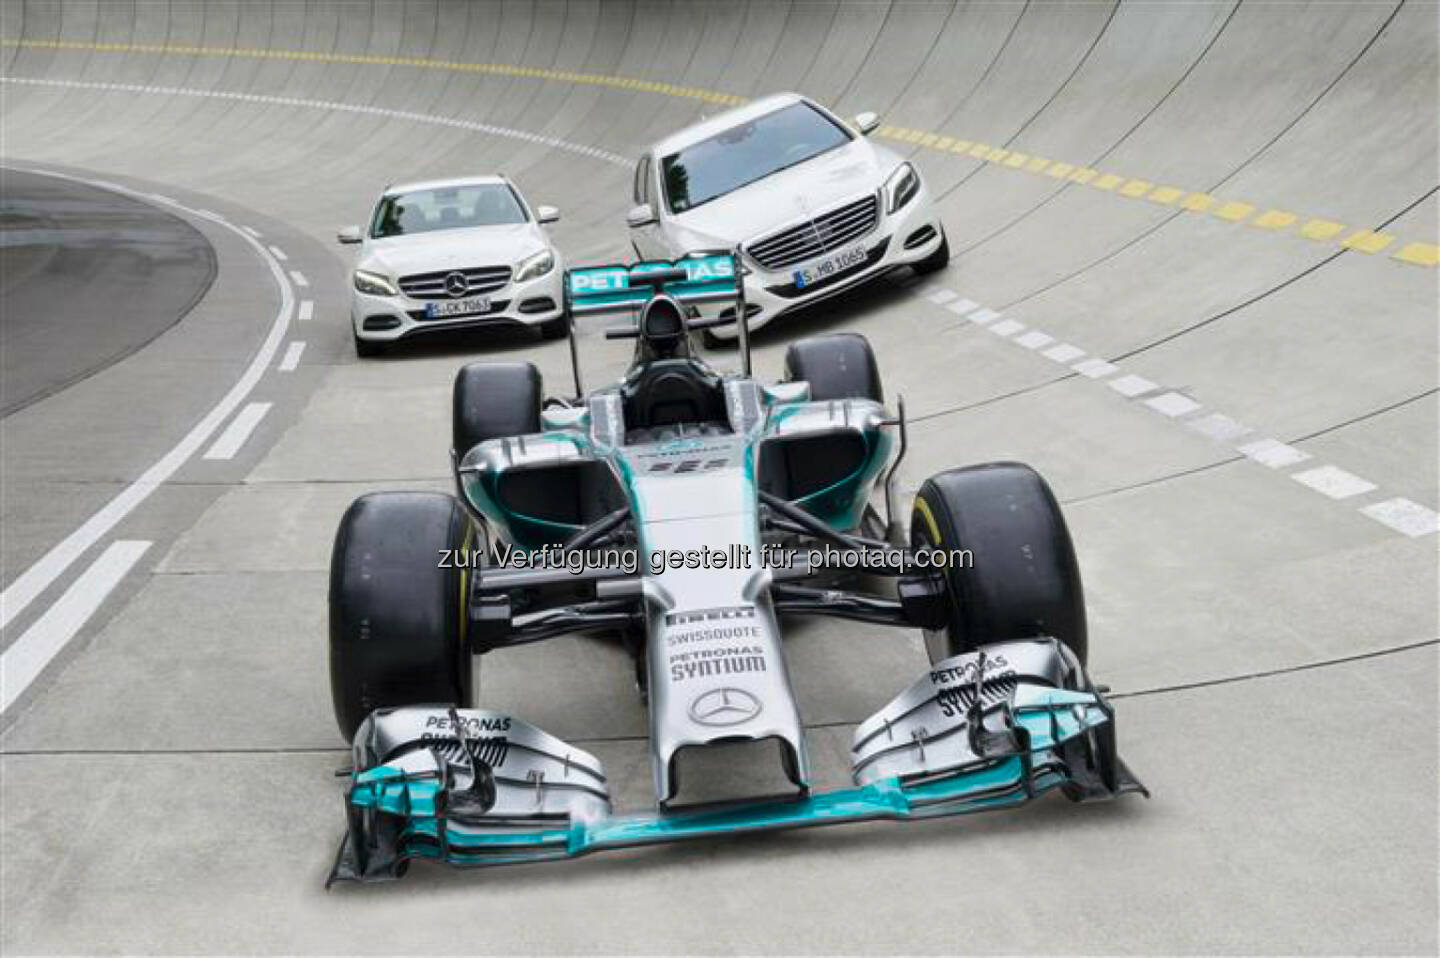 Daimler AG: Synergien zwischen Formel-1- und Serienentwicklung